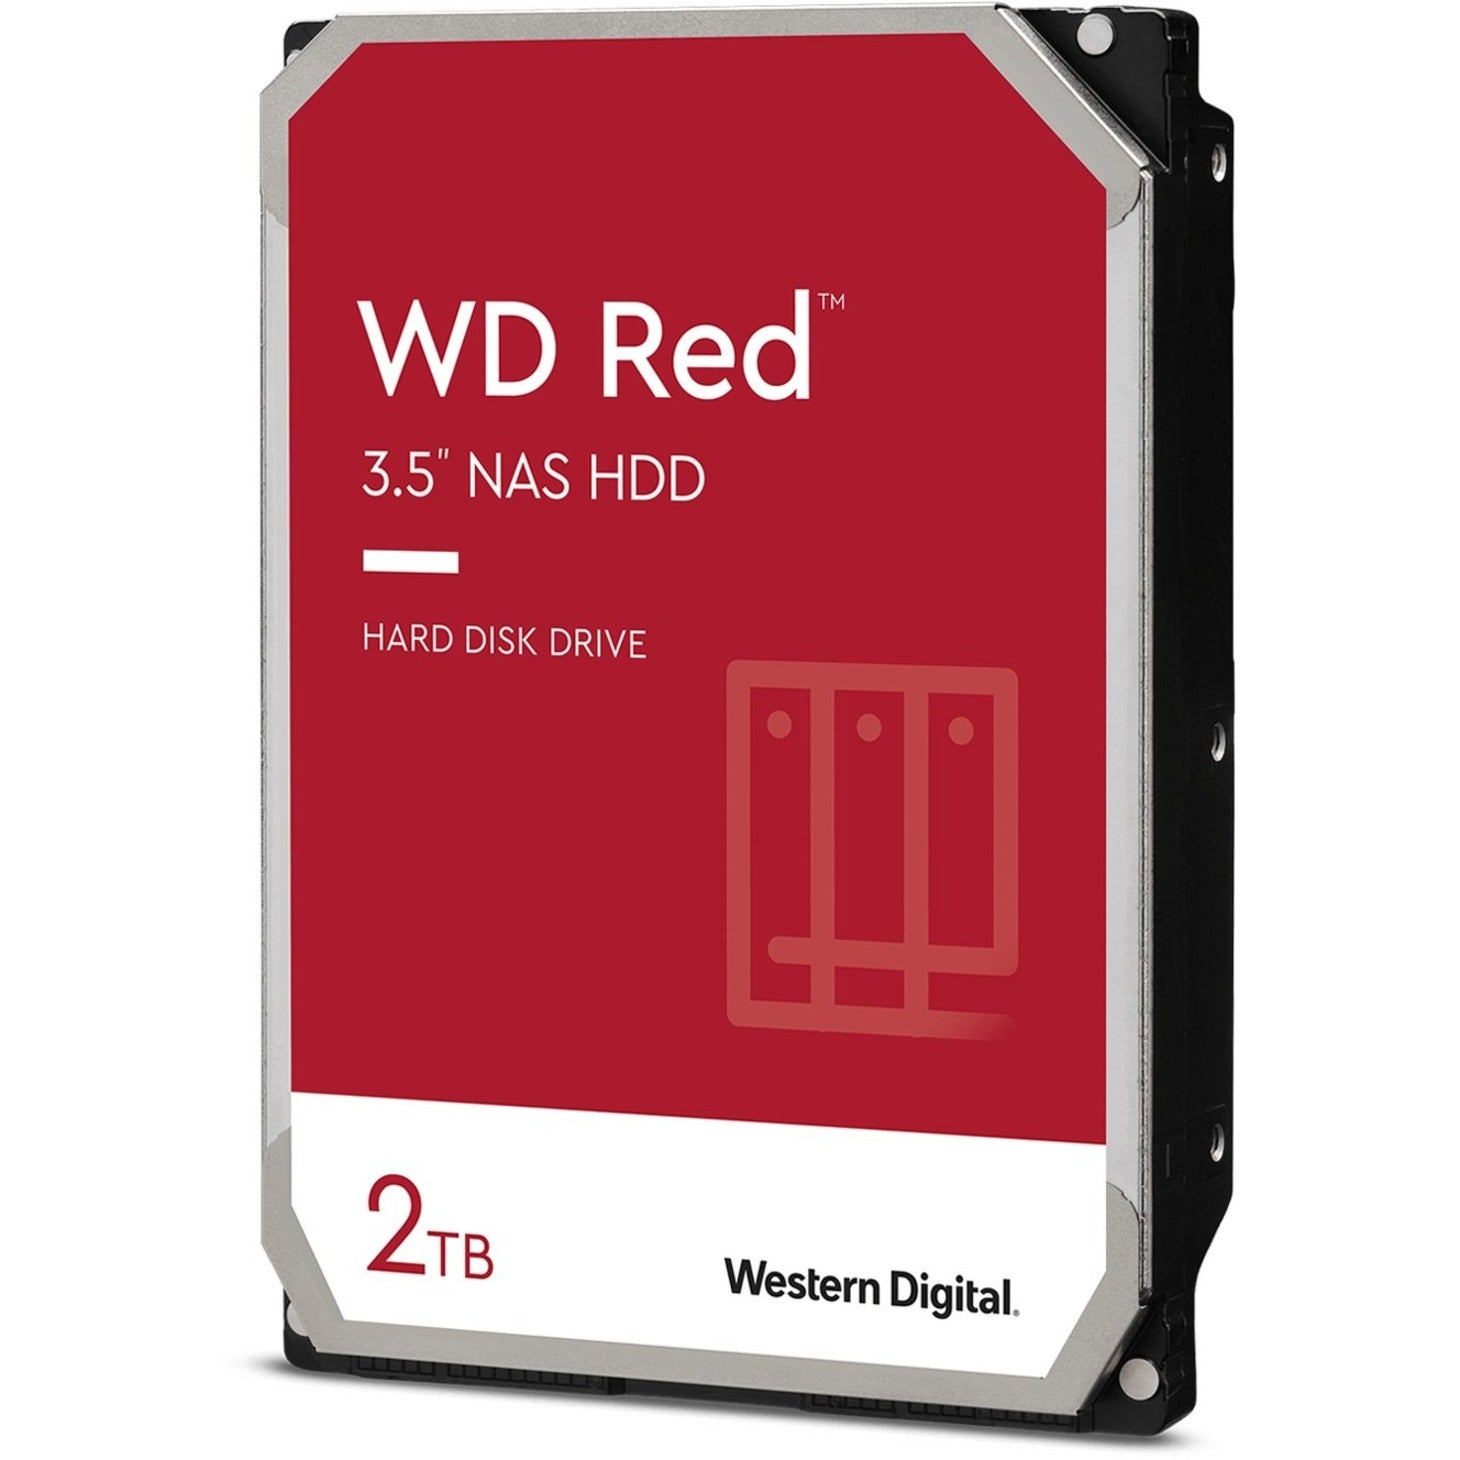 Western Digital WD20EFAX Red 2TB NAS Hard Drive, 3.5" Internal, 5400rpm, 256 MB Buffer